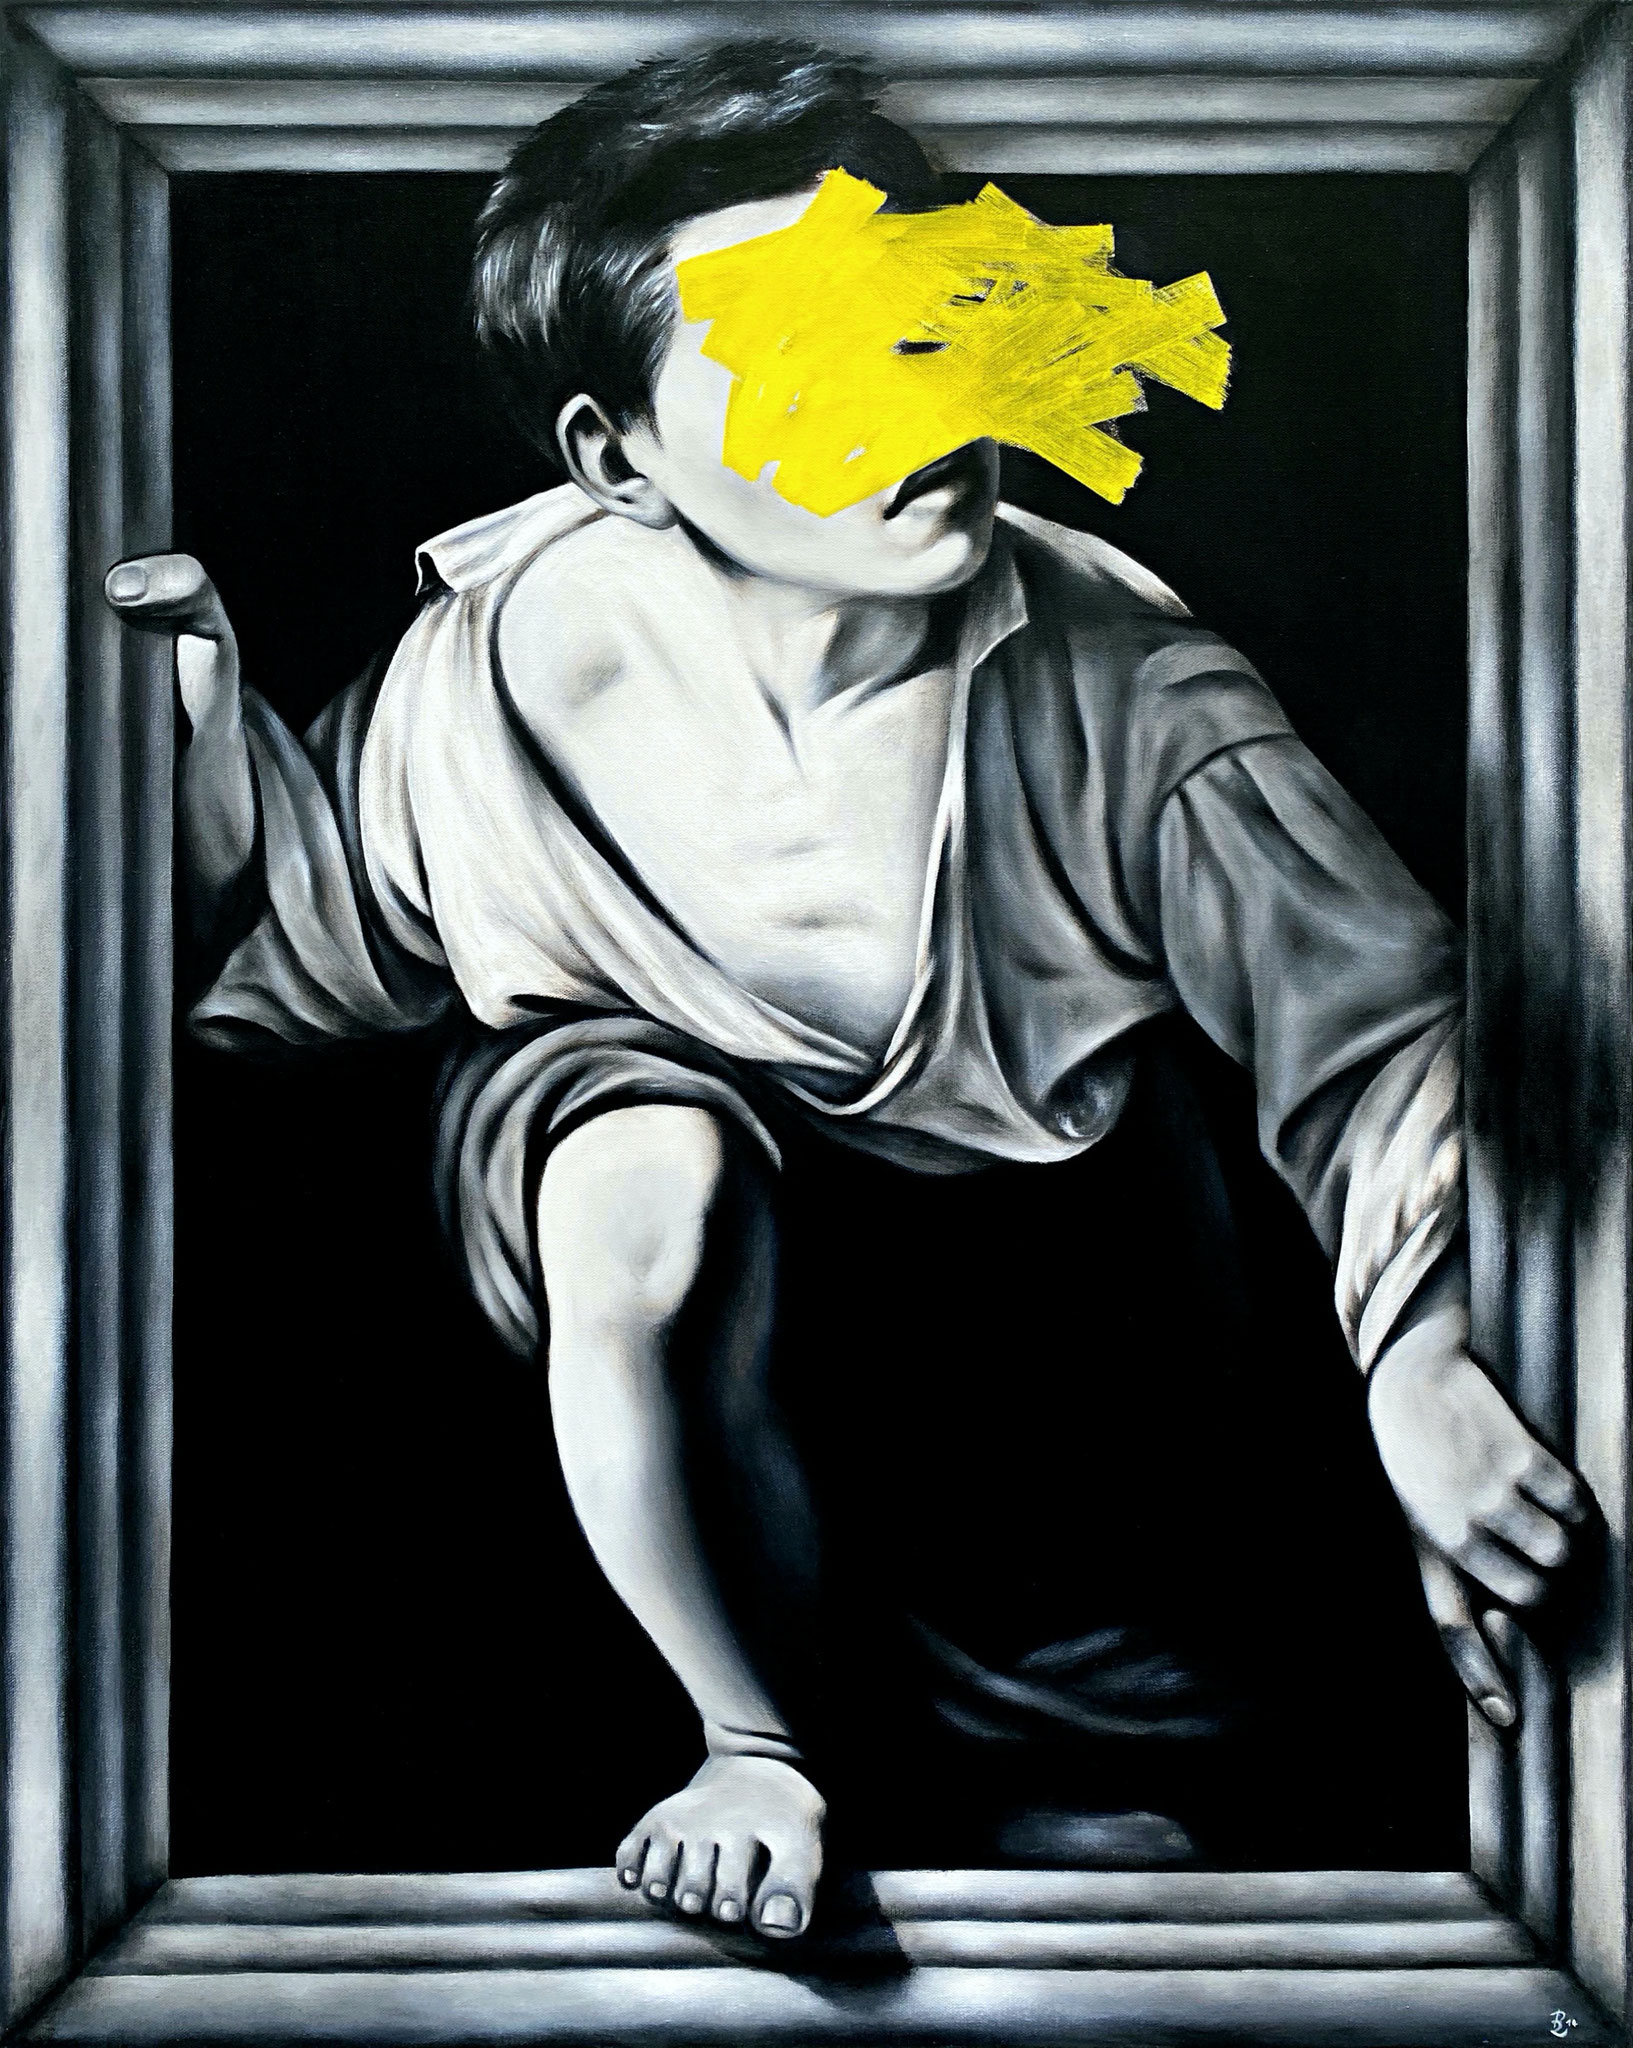 ESCAPE (After Pere Borrell del Caso), acrylic + liquid chalk on canvas, 100 x 80 cm, 2014